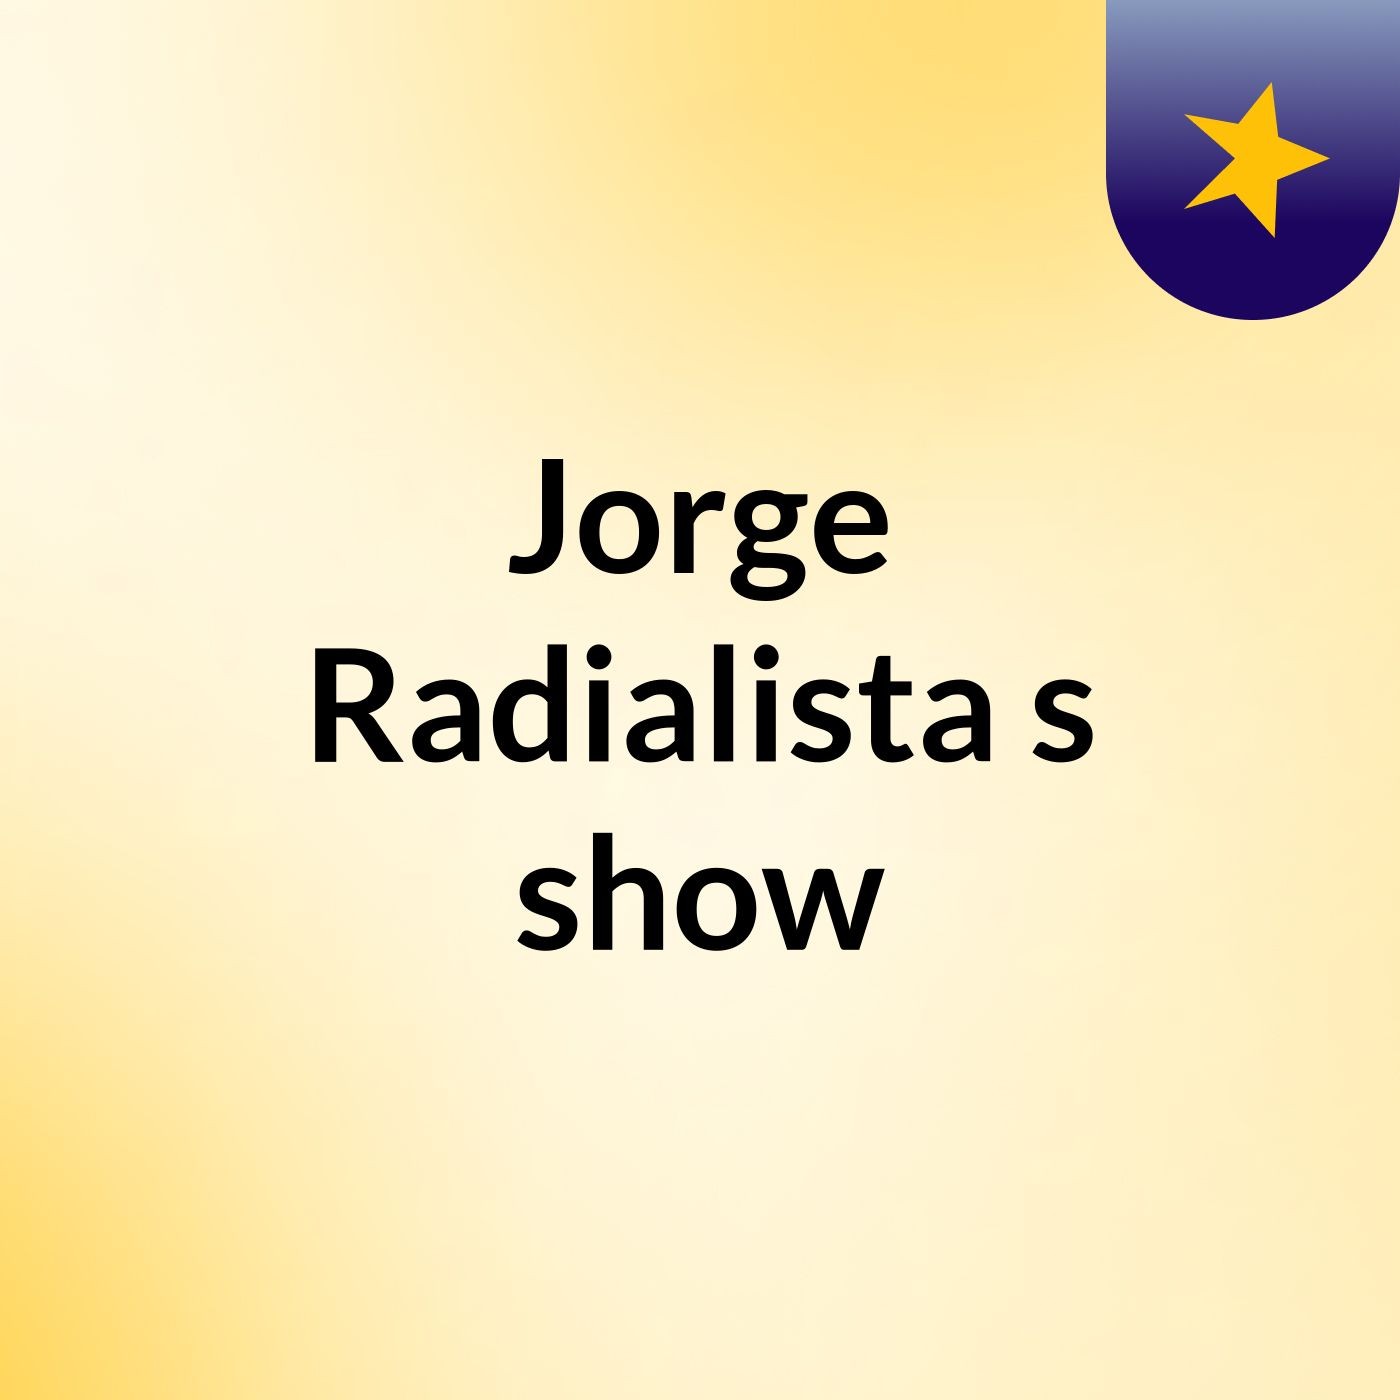 Jorge Radialista's show